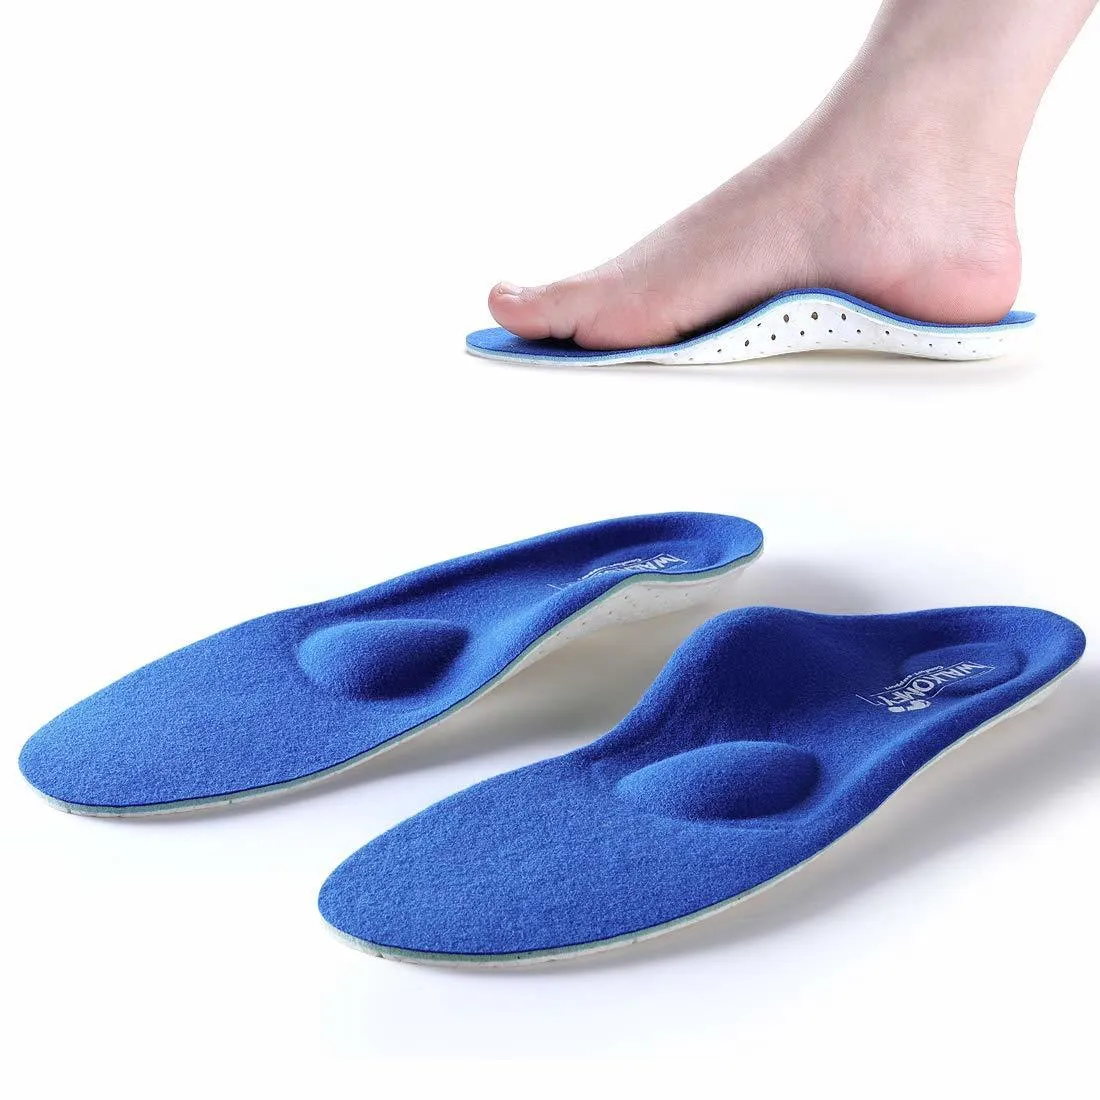 Schuhteile Accessoires Walkomfy Flat Feet Arch Support orthop￤dische Einlegesohlen M￤nner Frauen Plantarfasziitis Absatz Schmerz Ortics Einlegesohlen Sneakers Schuheins￤tze 221123